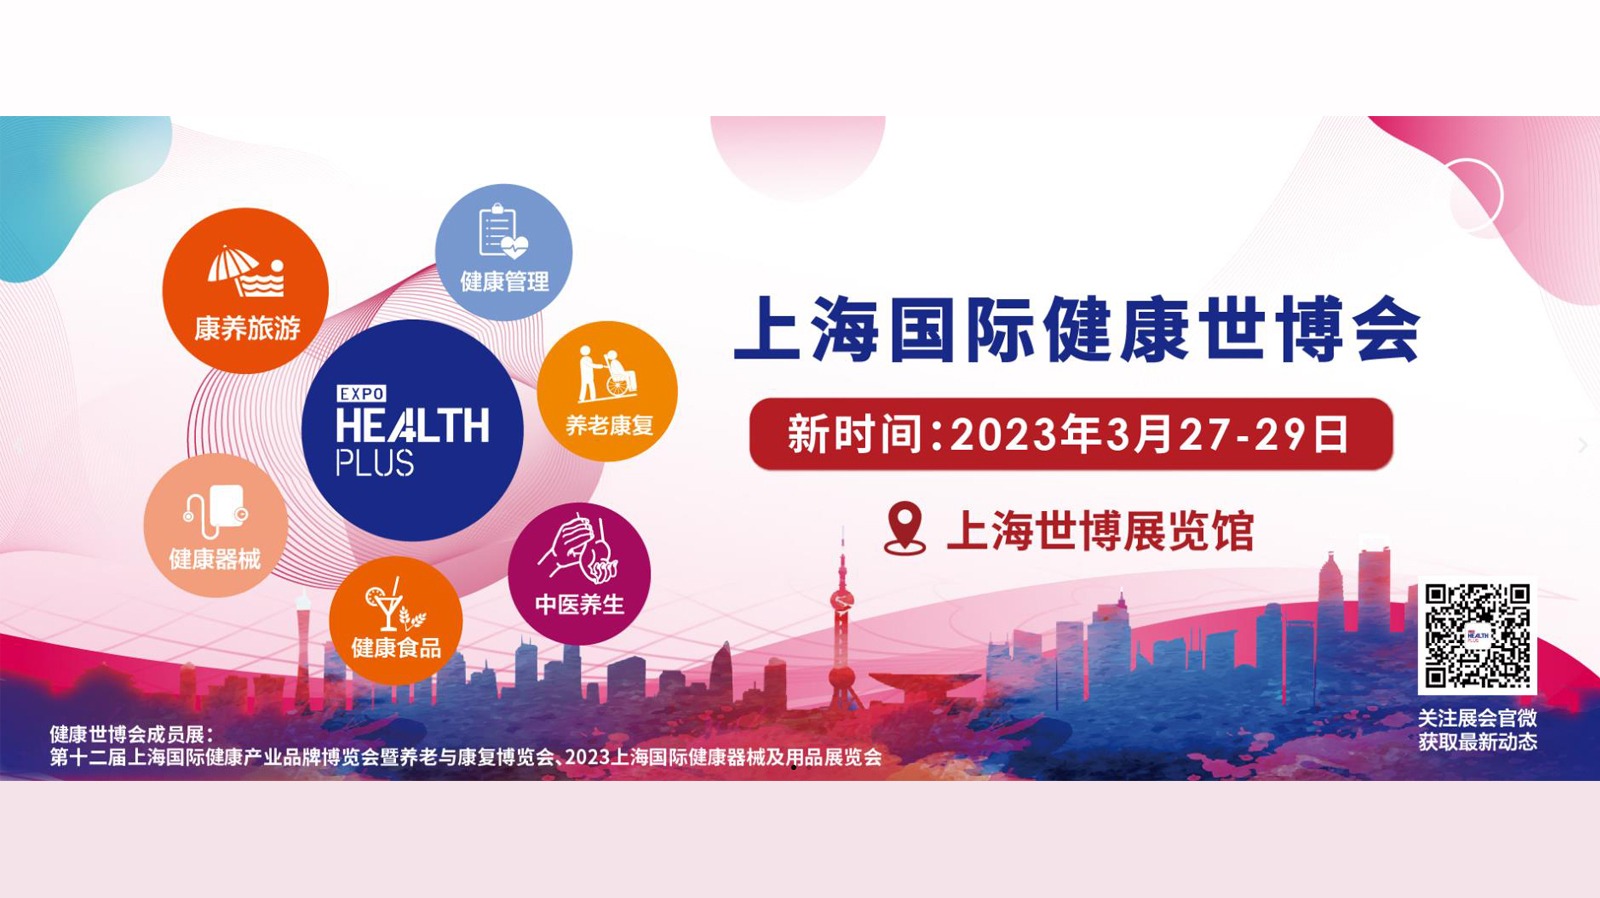 2023年上海国际健康世博会 Health Plus